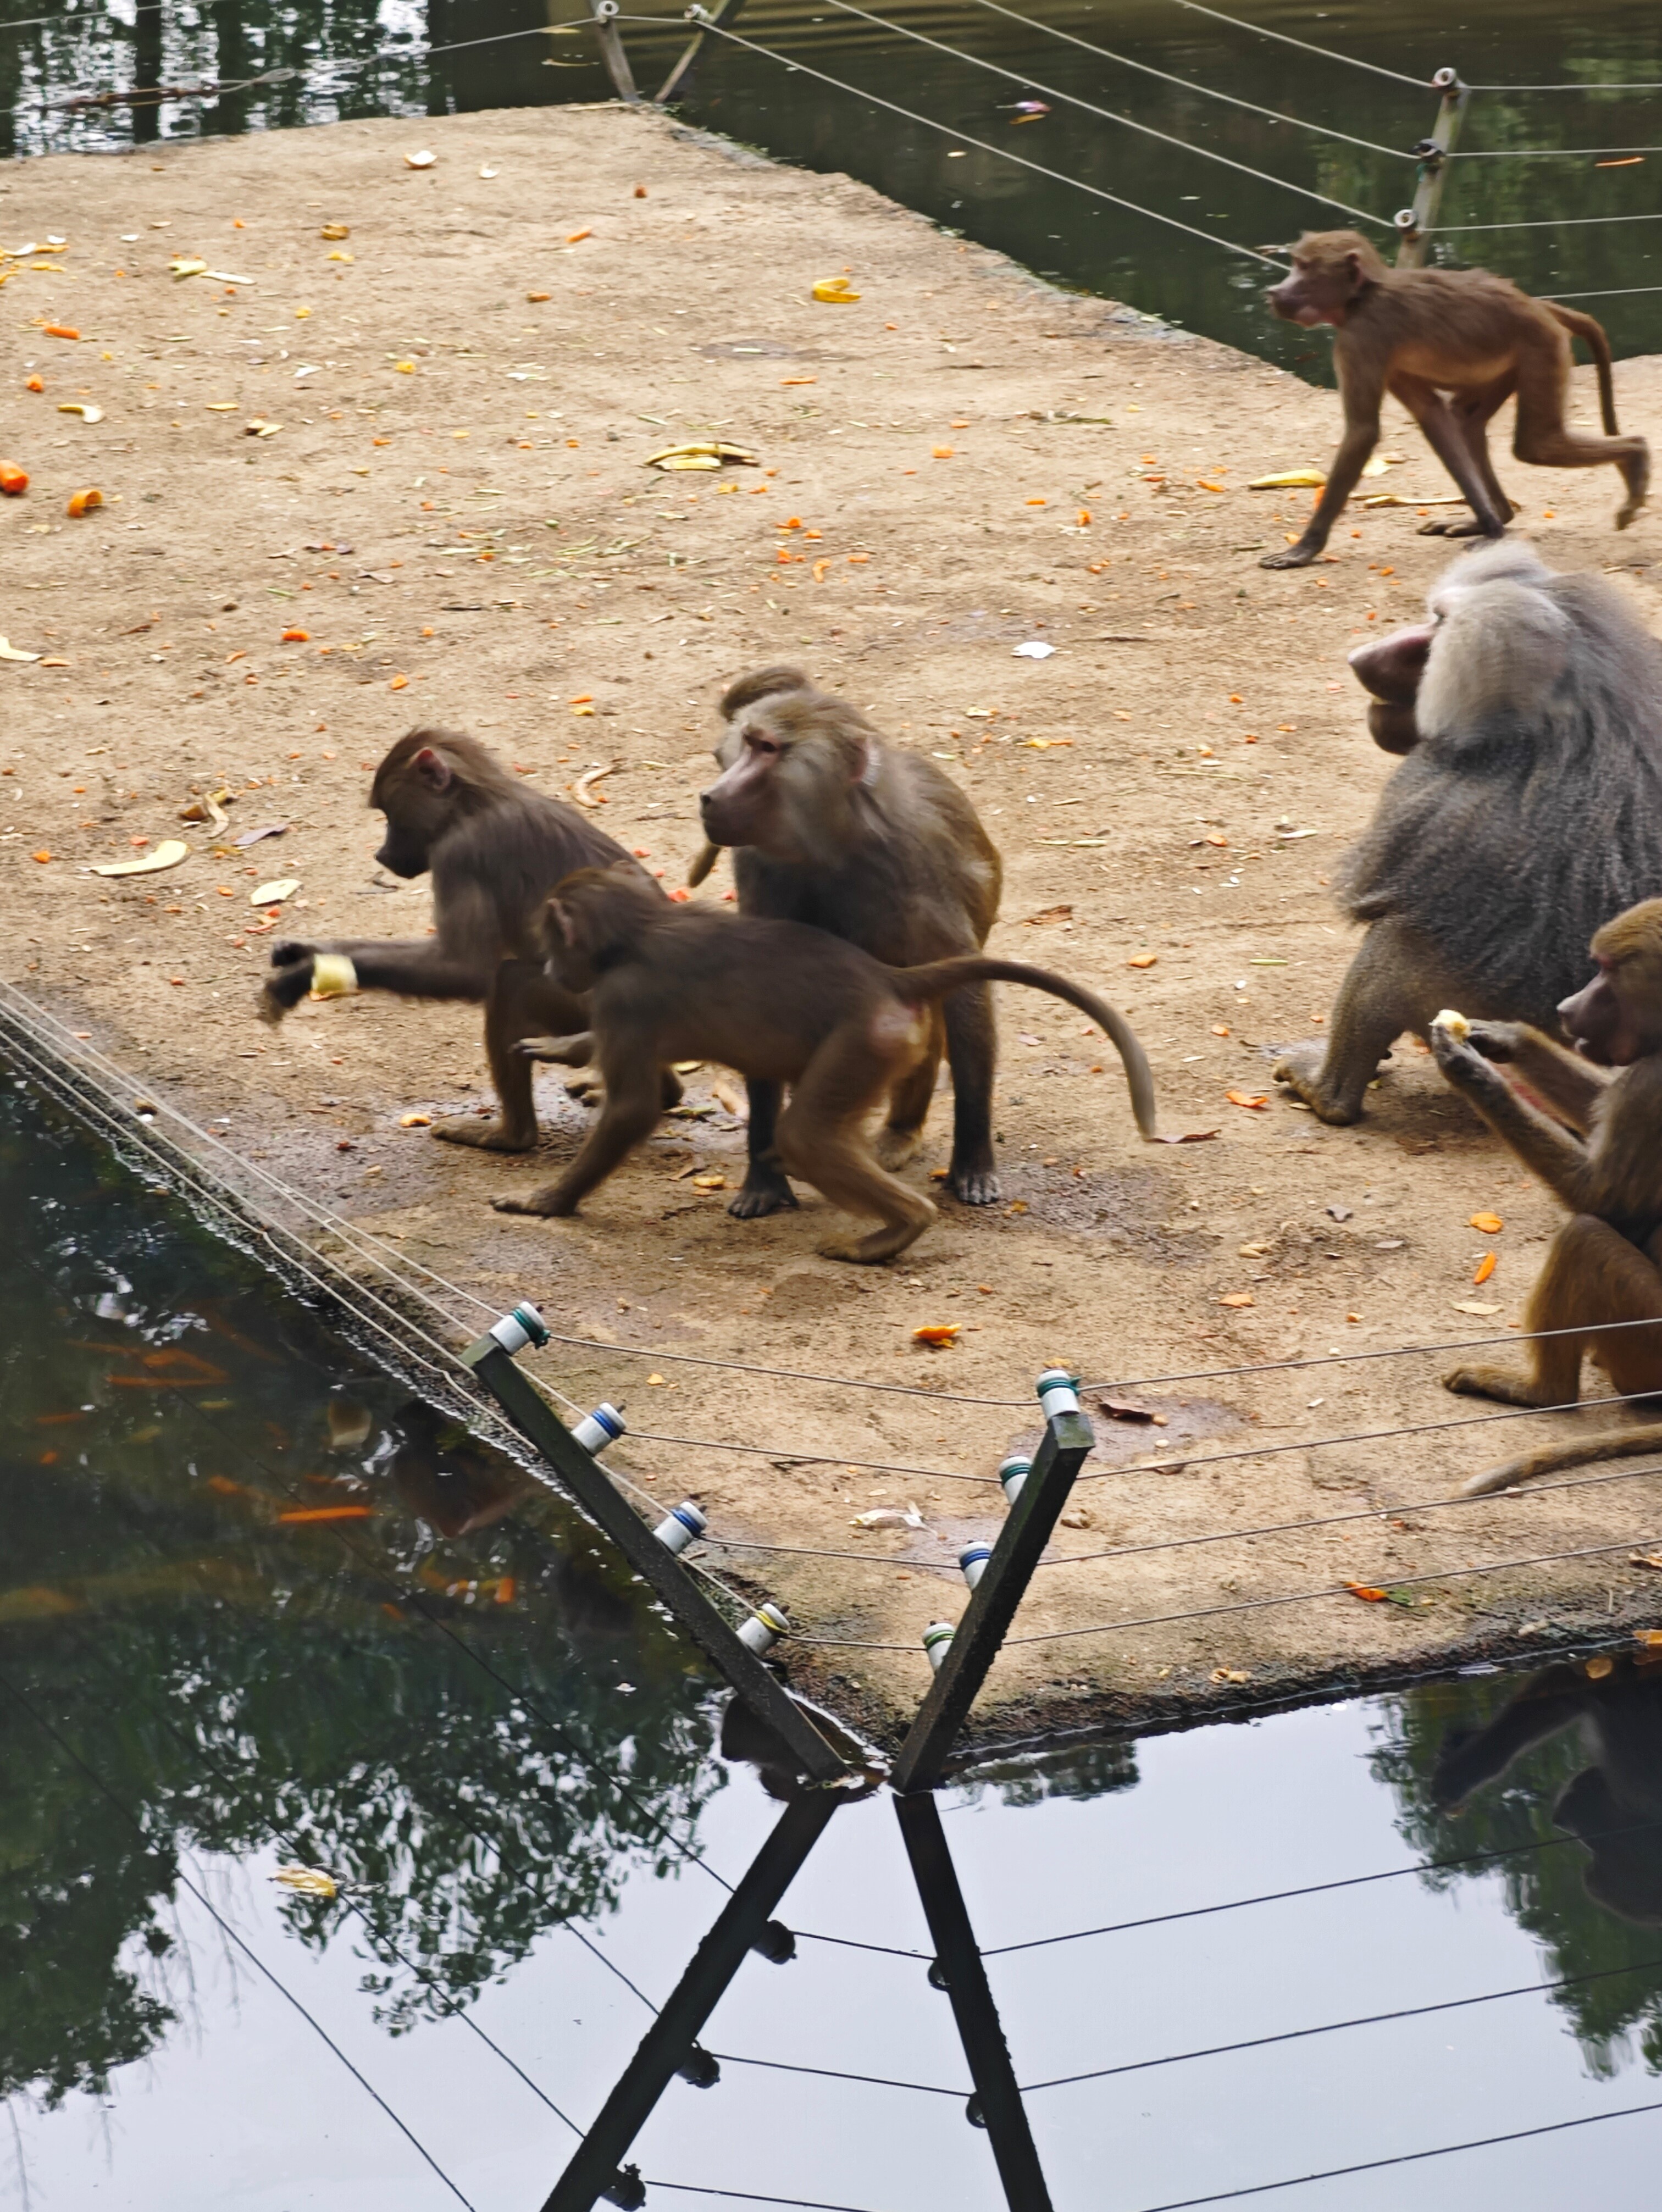 浙江安吉动物园,野生动物种类繁多,是一个值得去的地方